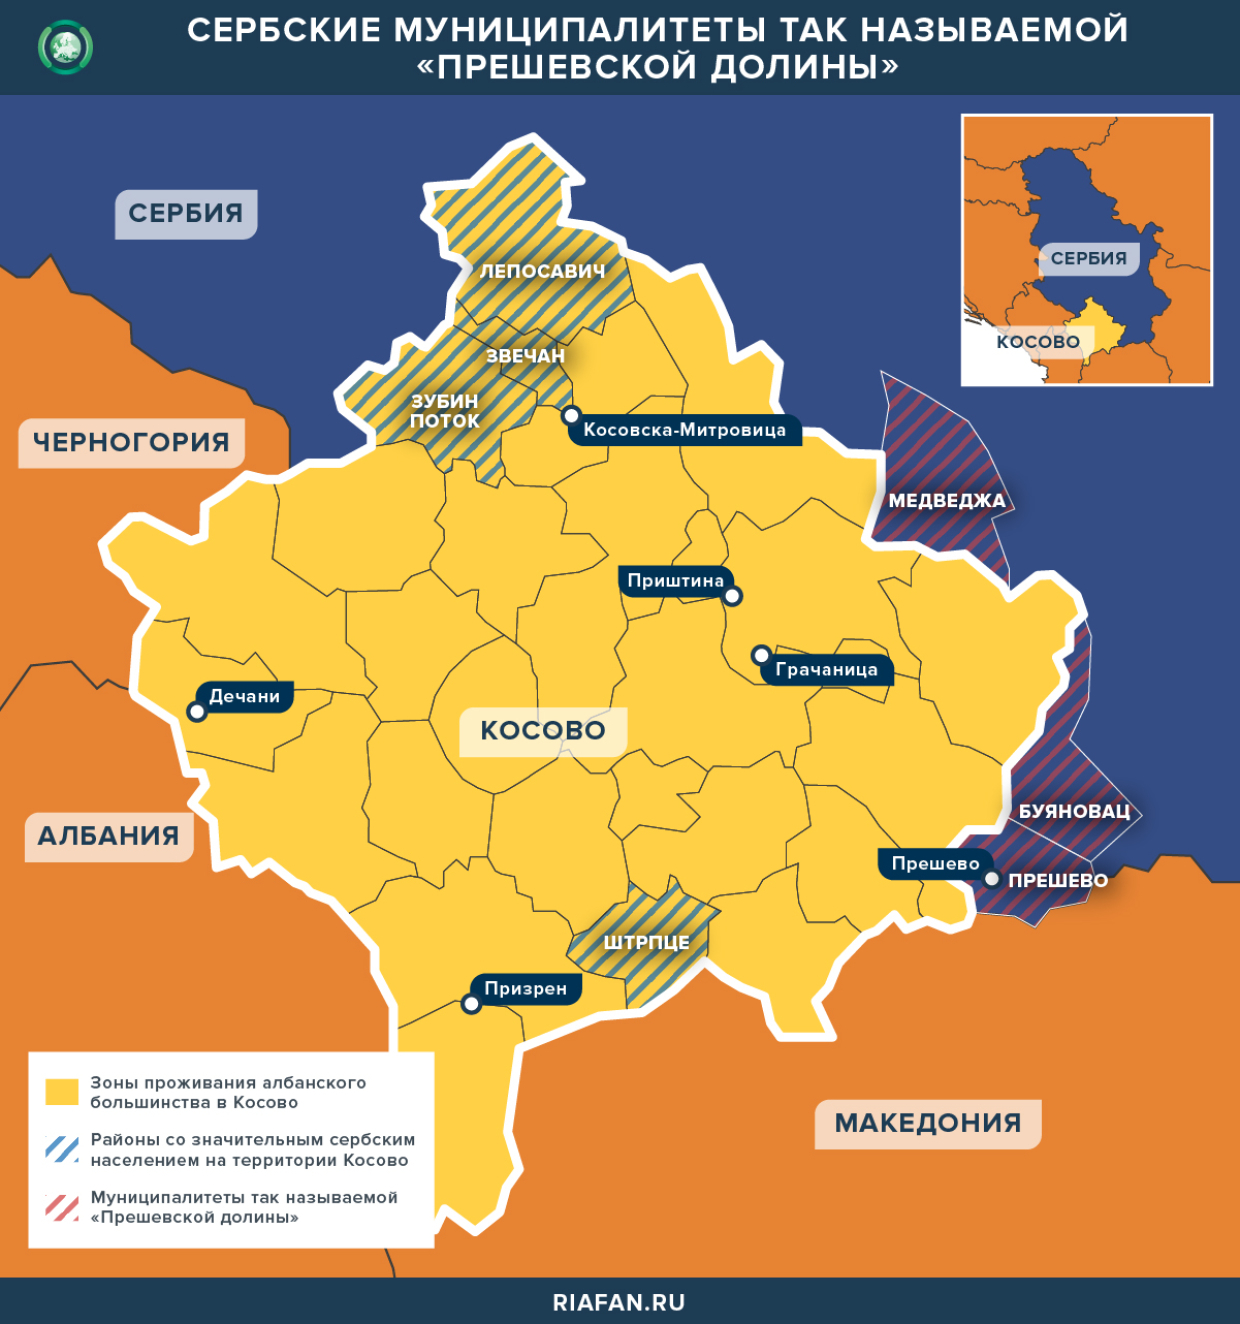 Сербские муниципалитеты «Прешевской долины»